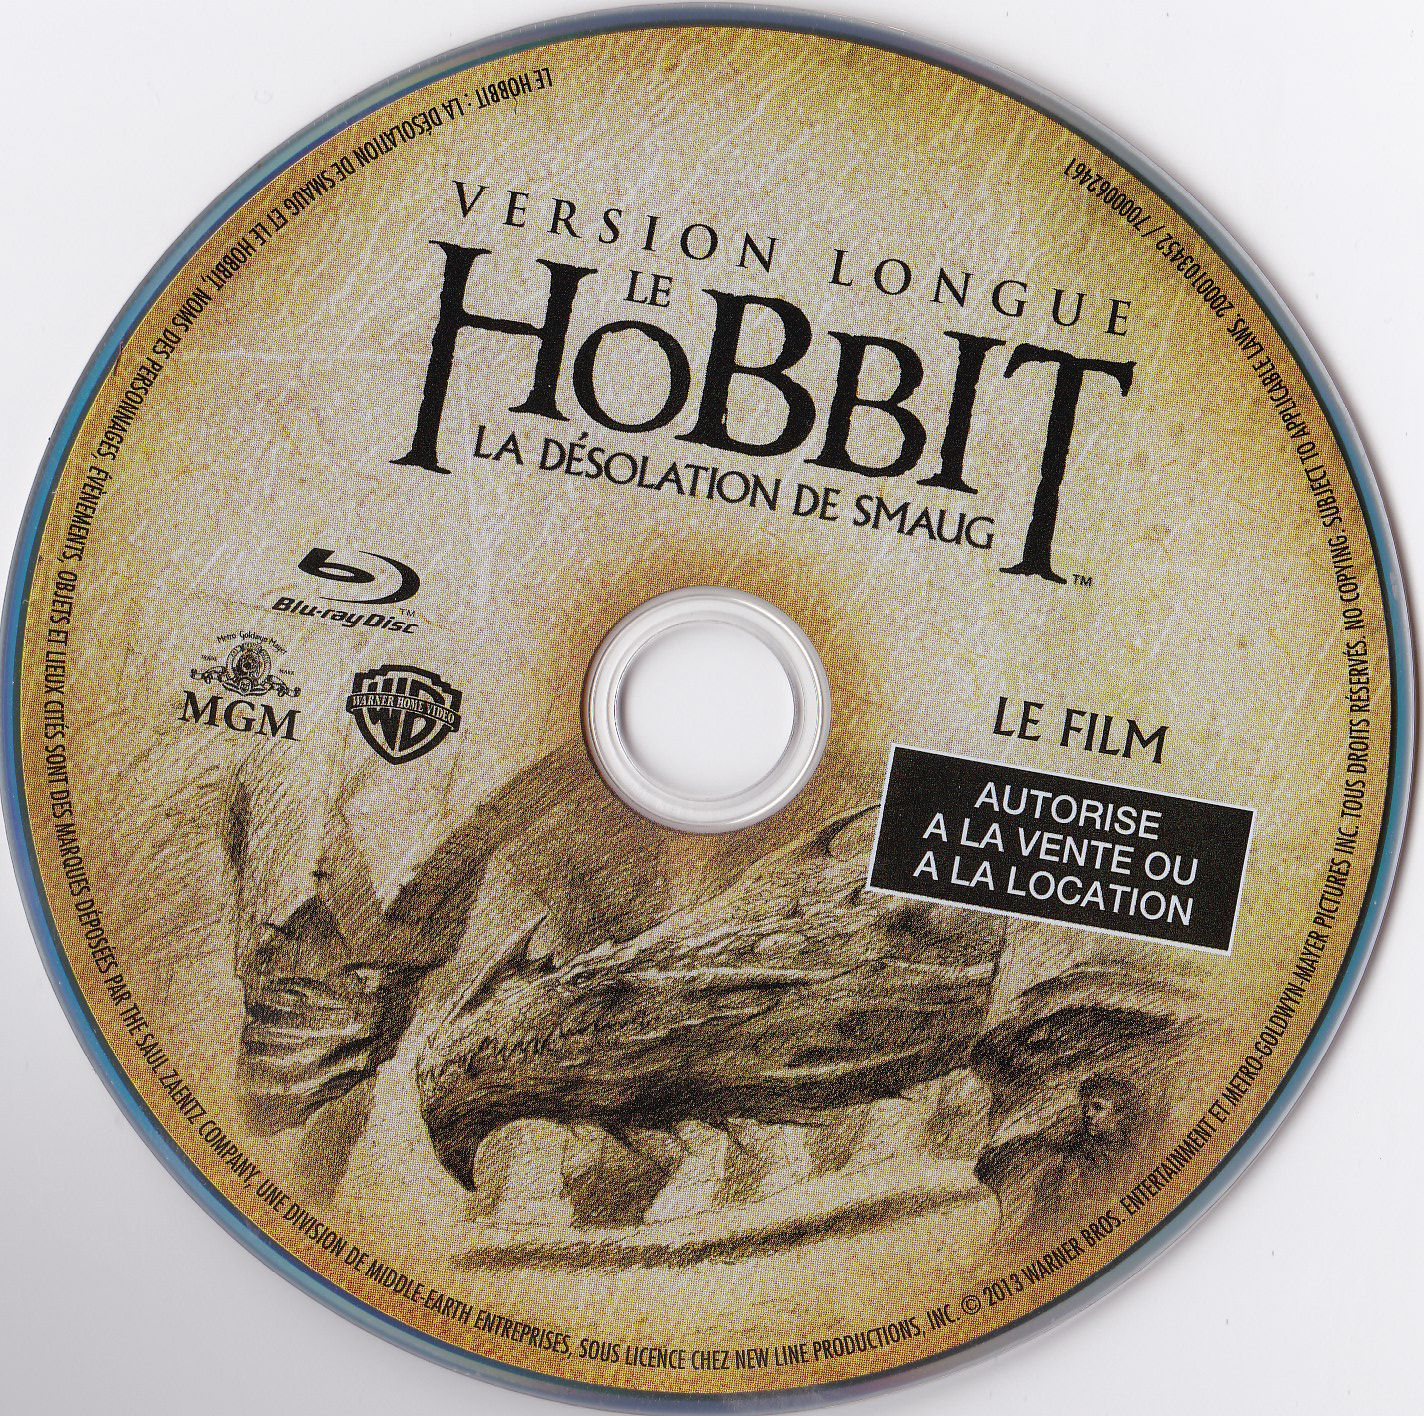 Le Hobbit la Dsolation de Smaug (Version longue) (BLU-RAY)